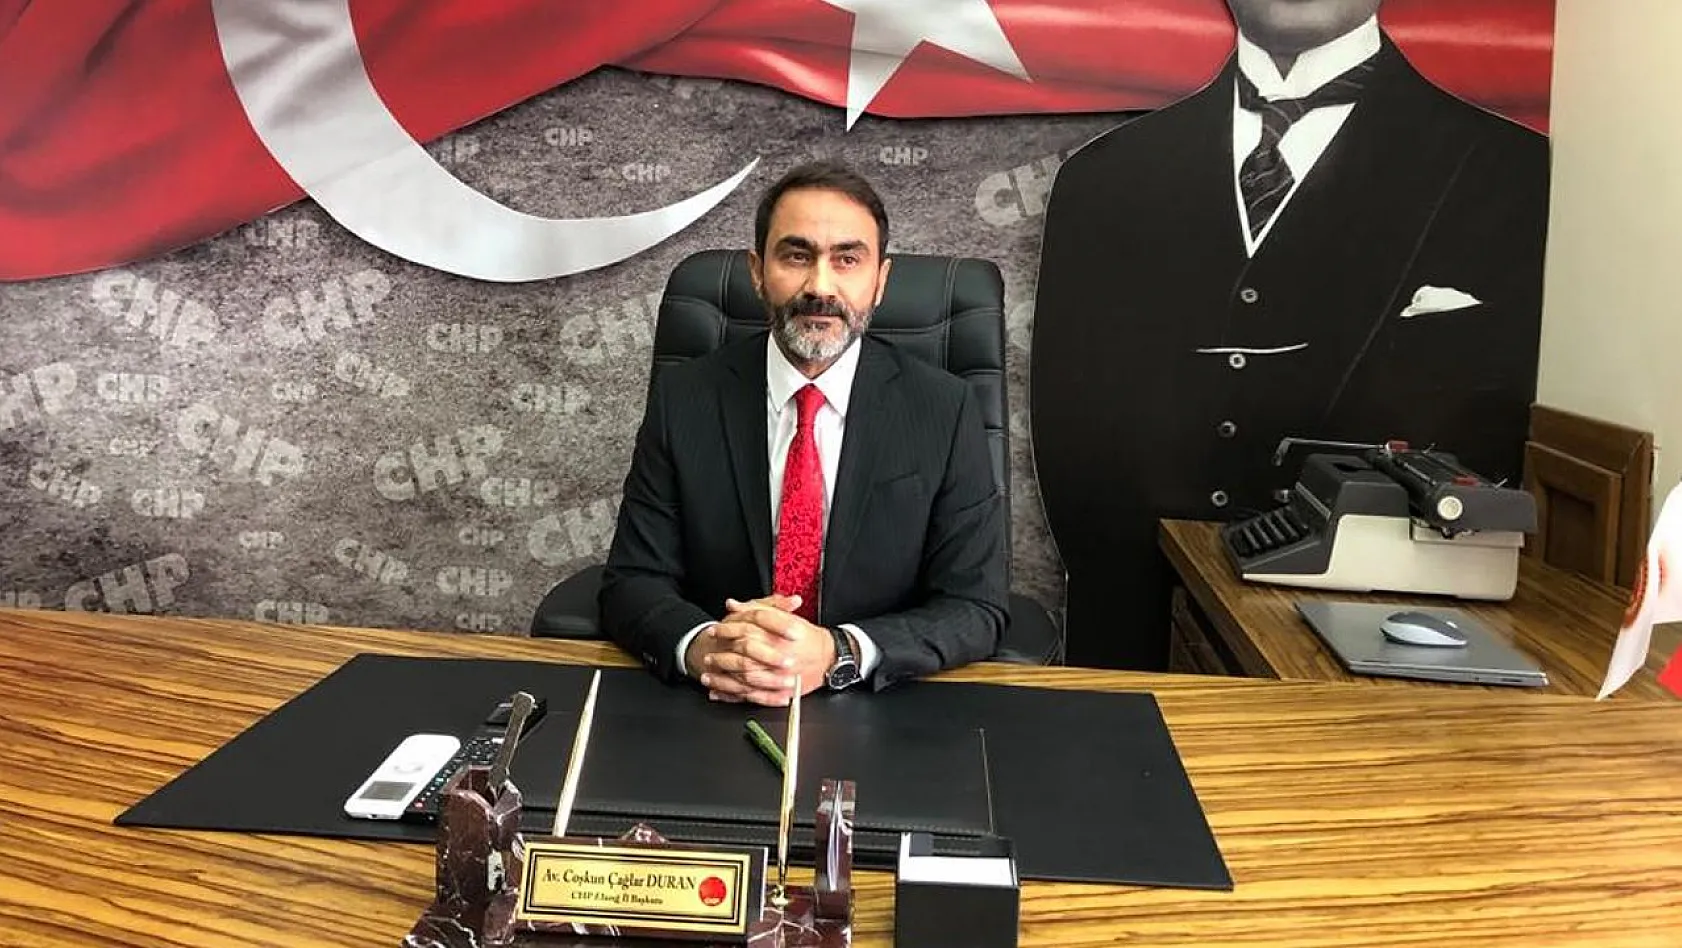 CHP İl Başkanı Duran'dan Siyasi Nezaket Çağrısı: 'Bu Miting Bir Milat Olsun'